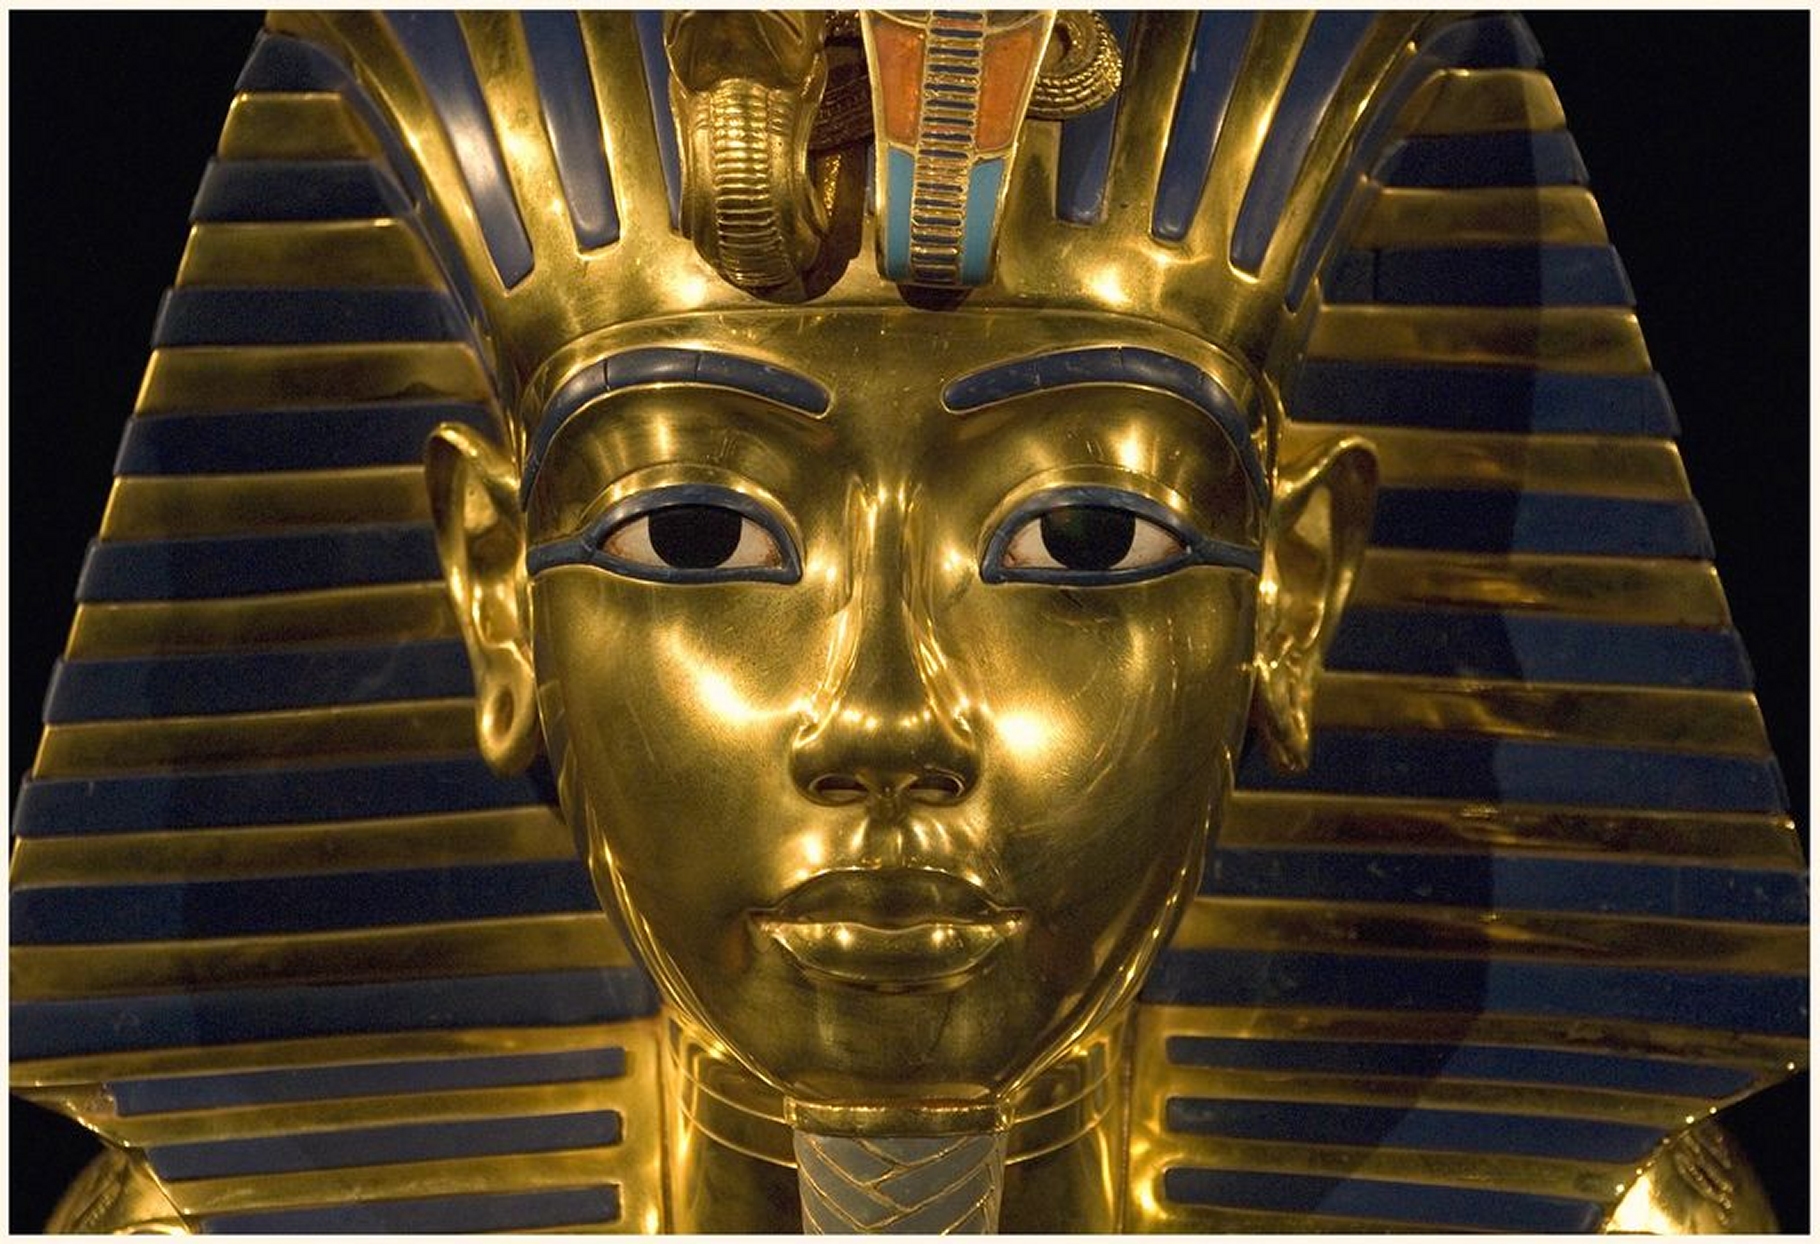 Le buzz du mois : c'est la déception en Égypte. Toutânkhamon et Néfertiti gardent leur secret. Le célèbre masque funéraire de Toutânkhamon. Enterré avec faste, le jeune pharaon mort à 19 ans a régné peu de temps et probablement sous la tutelle des prêtres. Son tombeau semble receler une chambre murée. Selon un ancien ministre égyptien, elle renfermerait « un trésor ». © Harry Potts, Flickr, CC by-sa 2.0